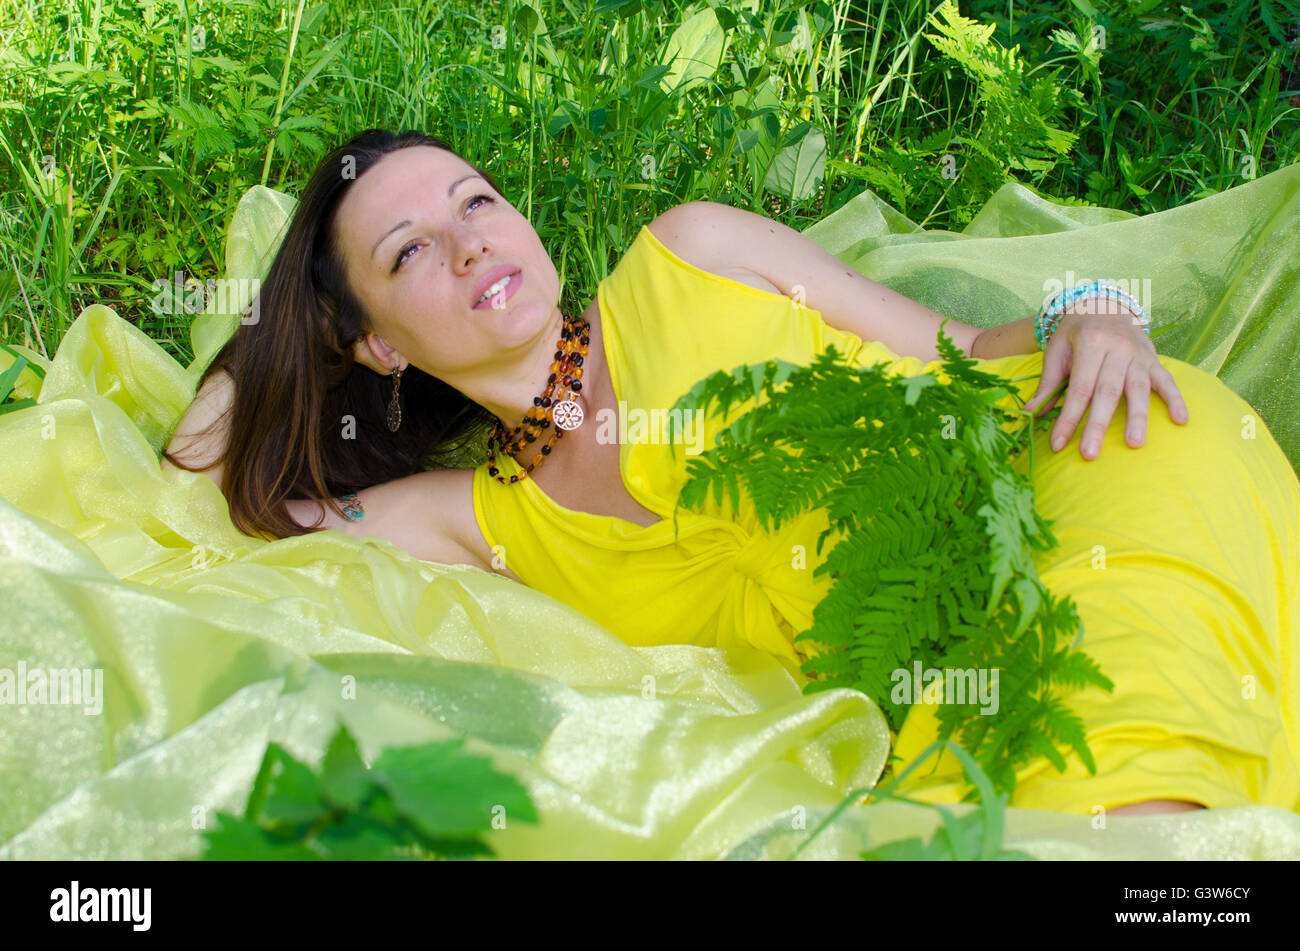 La giovane ragazza dorme sulla questione giallo in natura, giovane, la ragazza dorme, su giallo, materiale verde, un'erba, estate Foto Stock